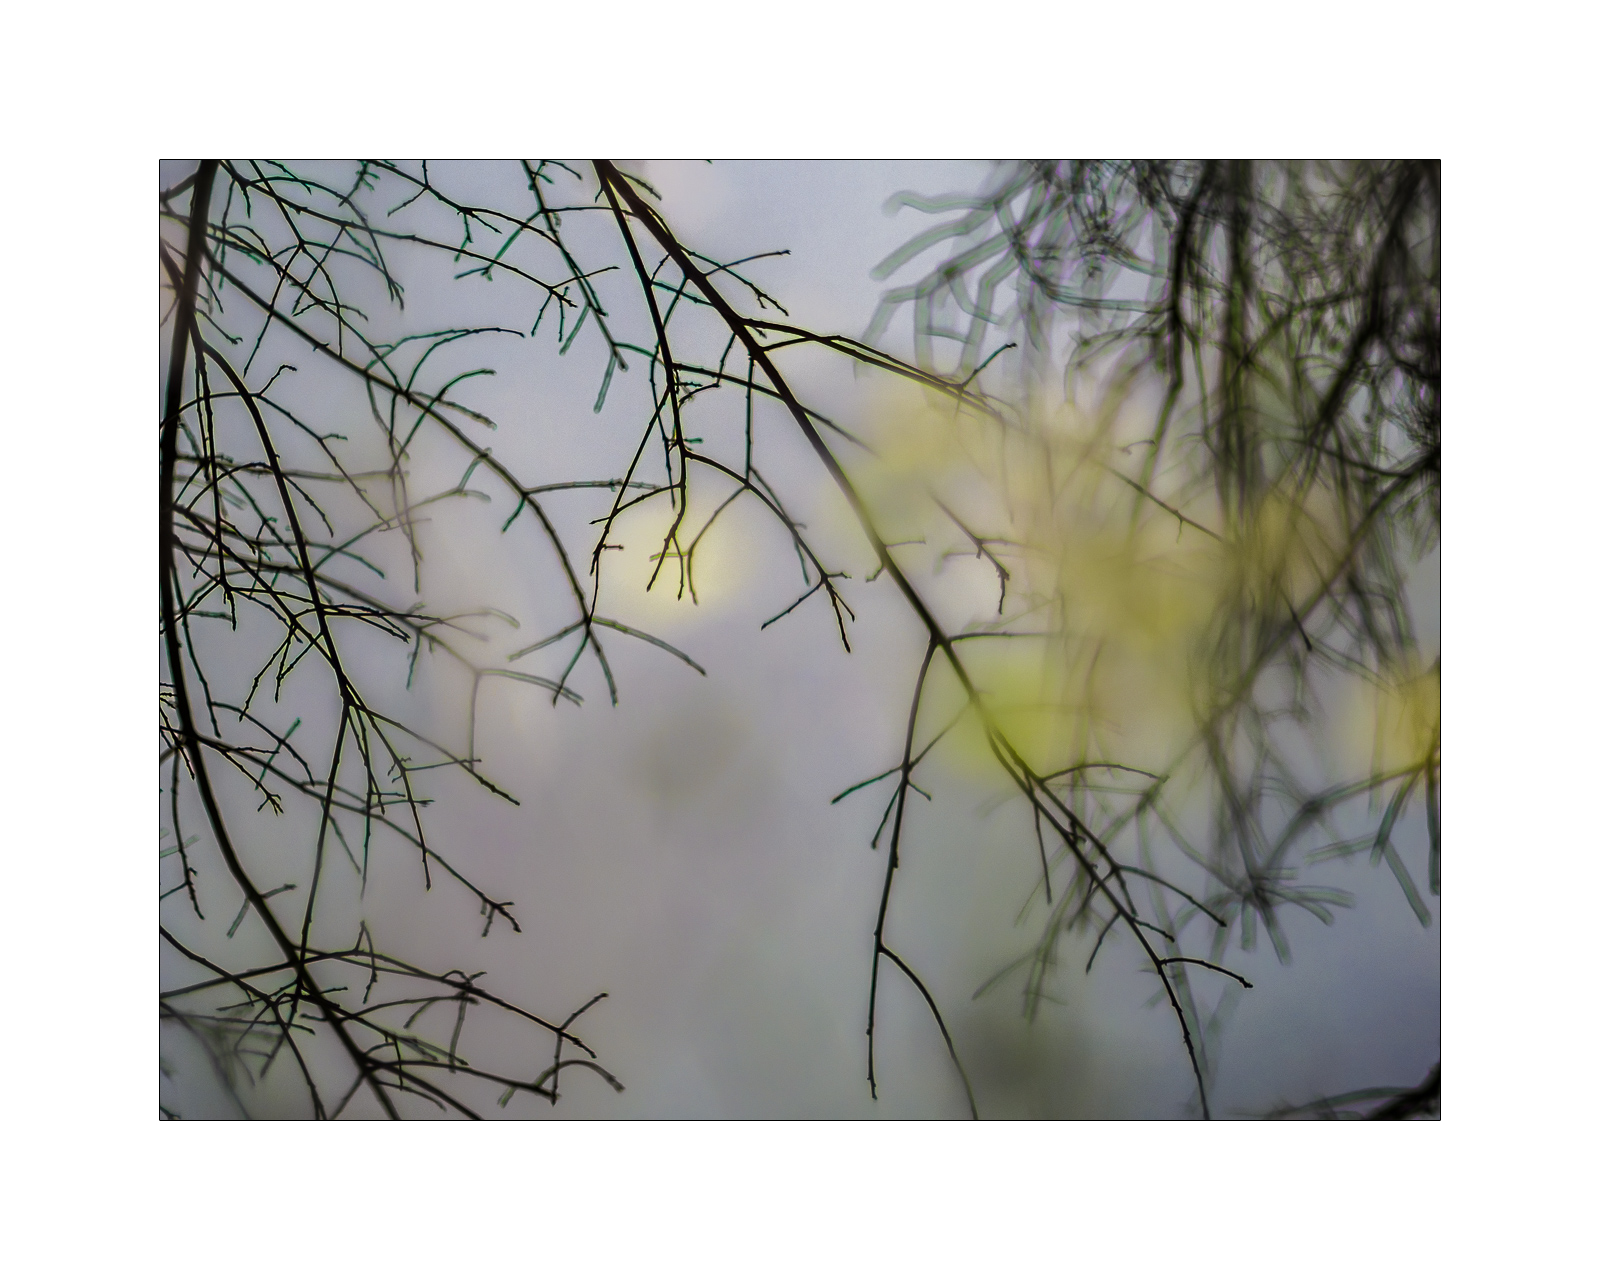 Kahle Äste spiegeln sich scharf auf einer WasserOberFläche. Auf dem Wasser treiben grüne Blätter, die aber unscharf sind und die trotzdem aussehen, als würden sie an den gespiegelten Zweigen hängen.